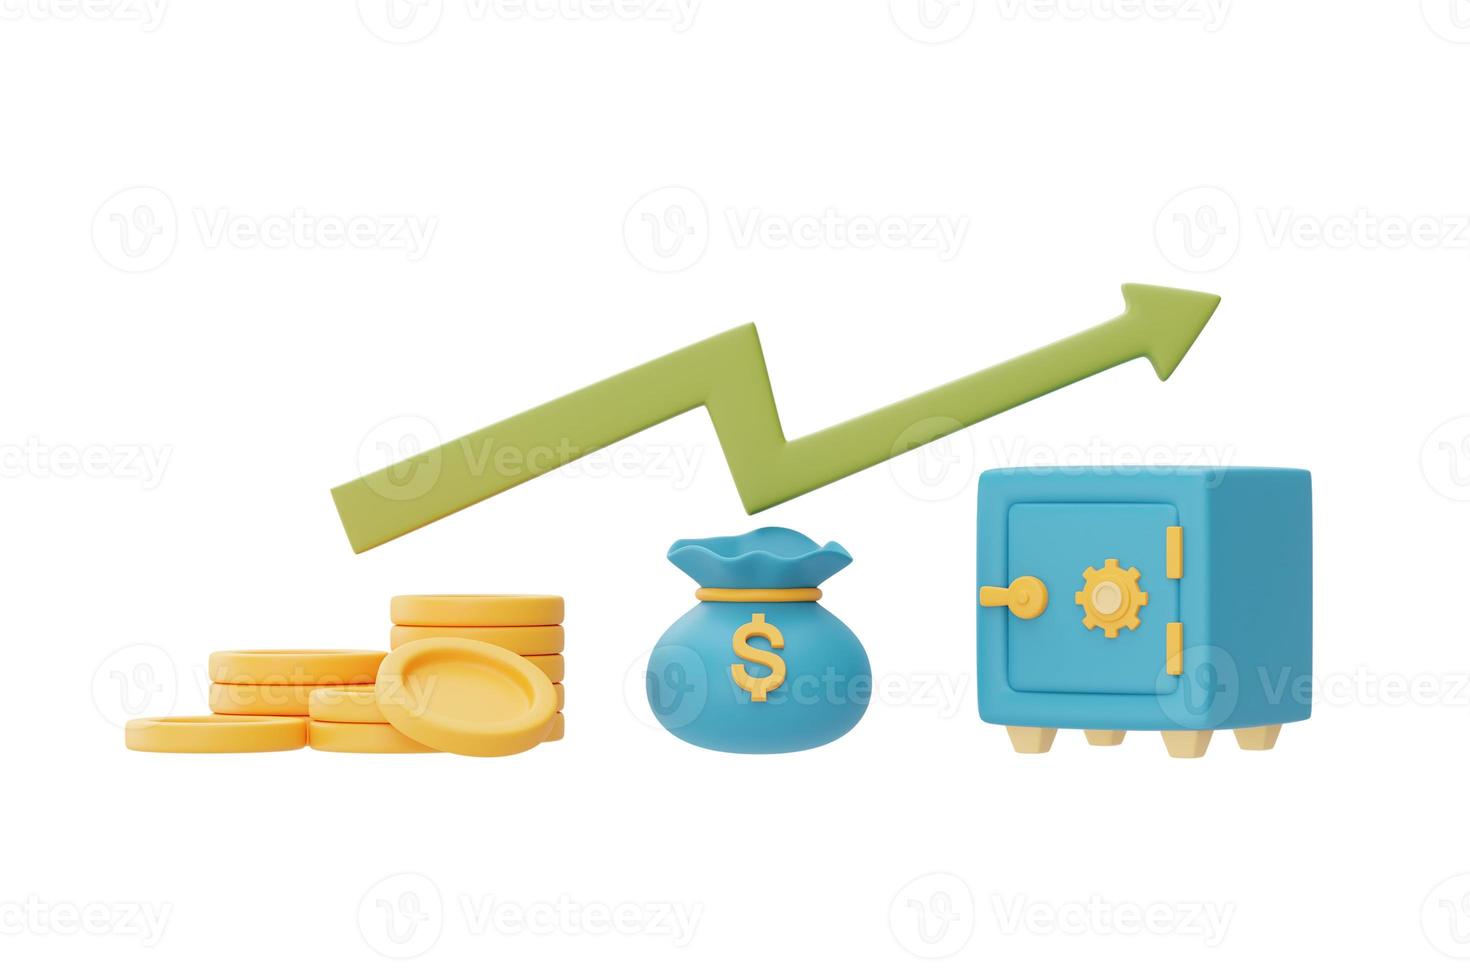 investimentos financeiros conceito de crescimento de renda futura com pilhas de moedas, saco de moedas e cofre, economizando dinheiro ou aumento de juros, renderização em 3d foto